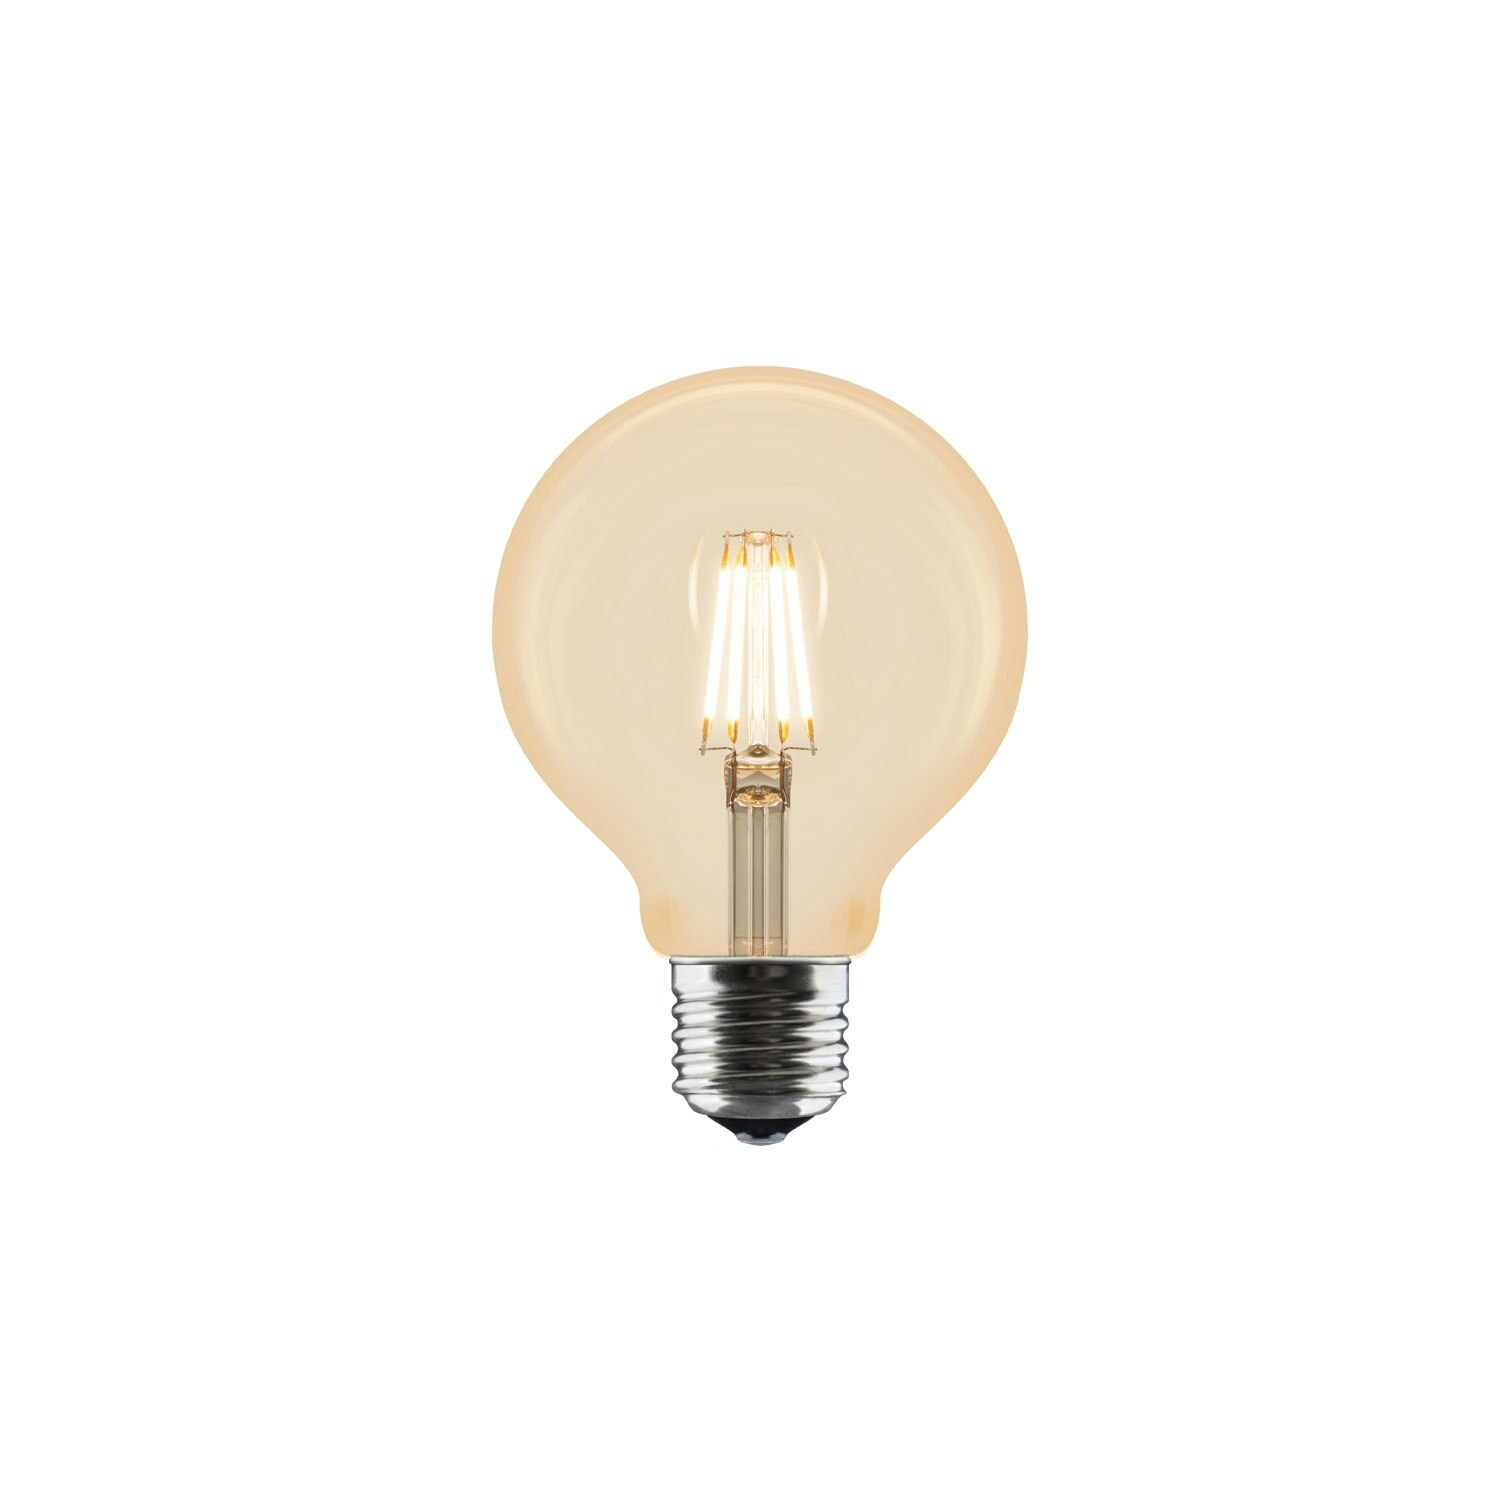 Bulb E27 LED 80 mm - Umage @ RoyalDesign